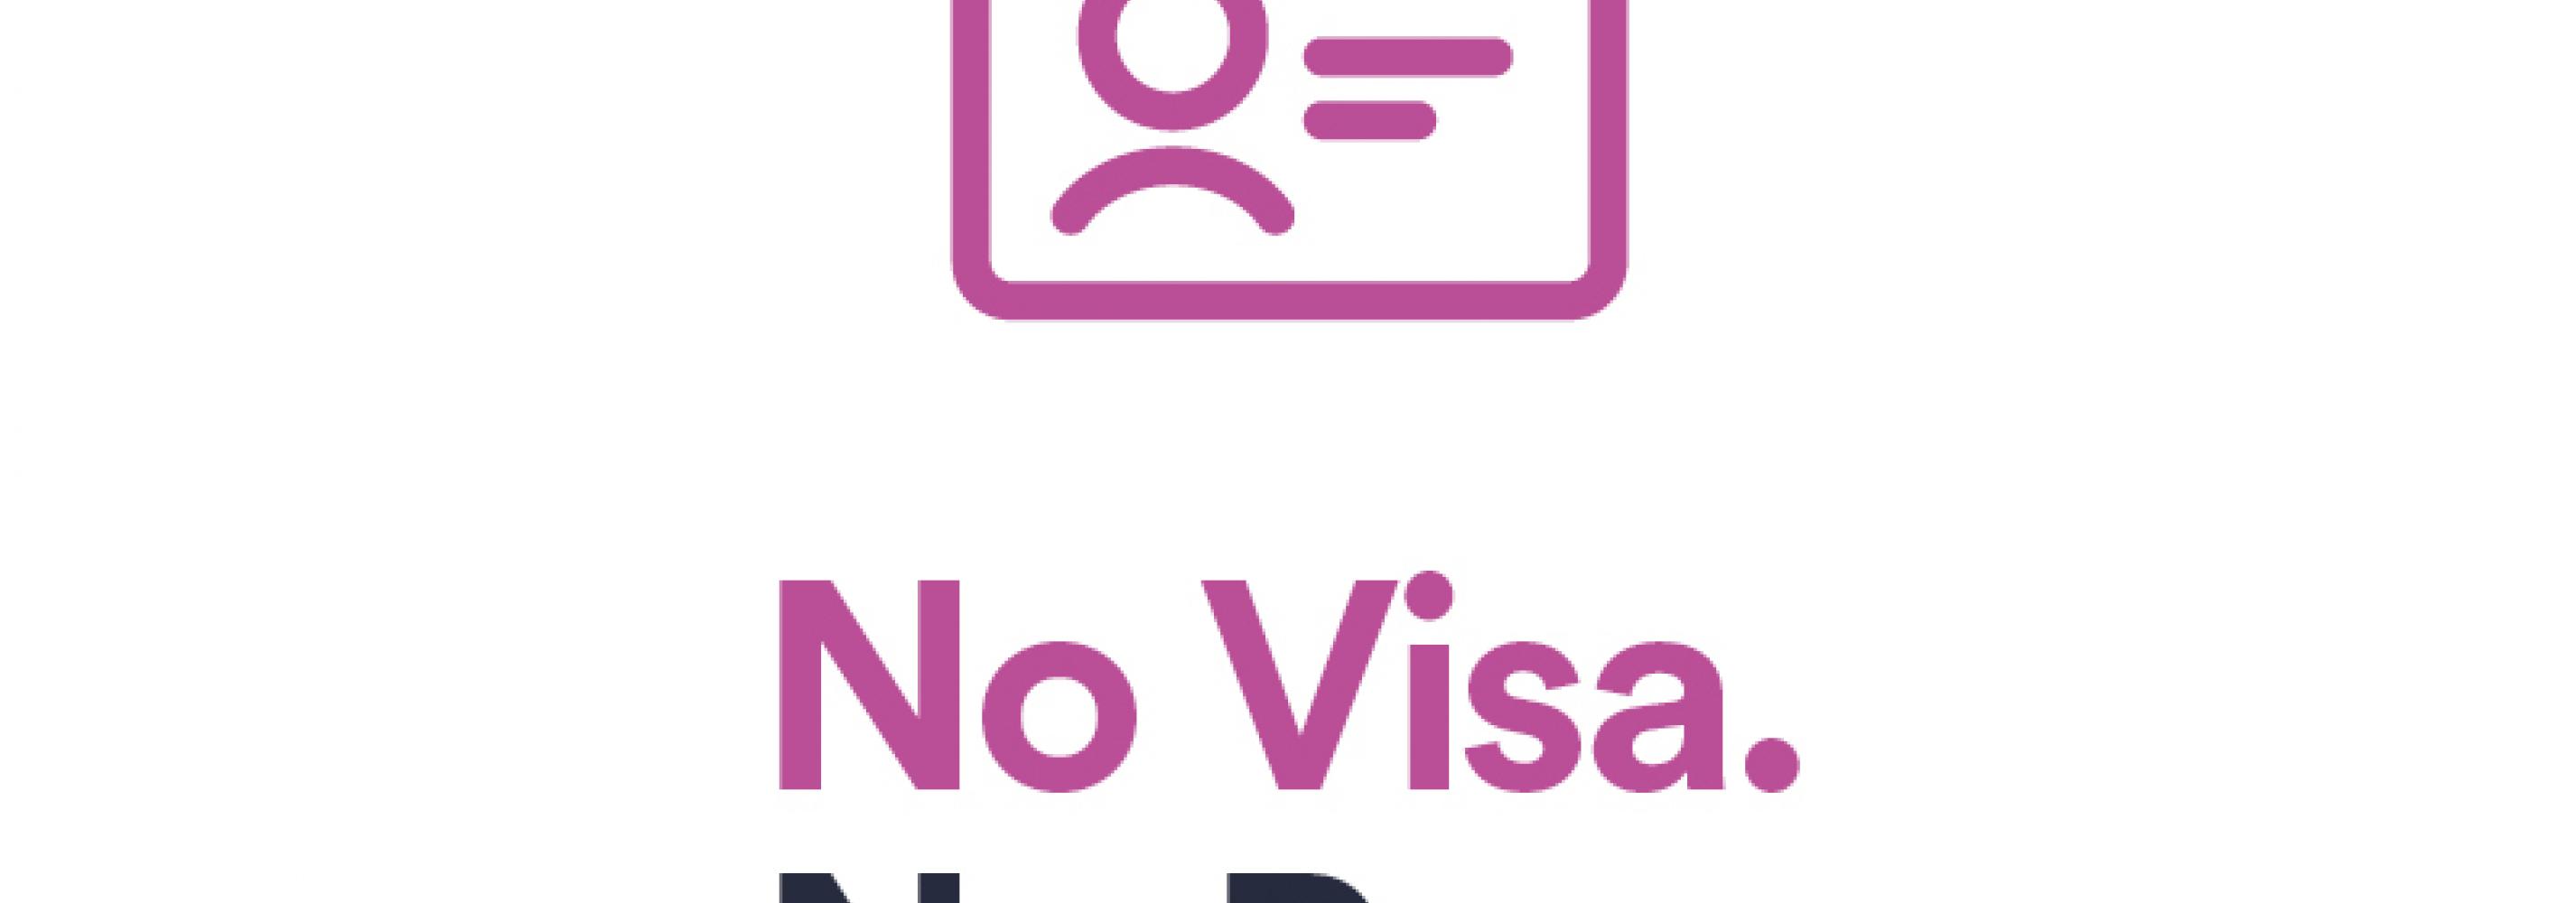 NO Visa No Pay